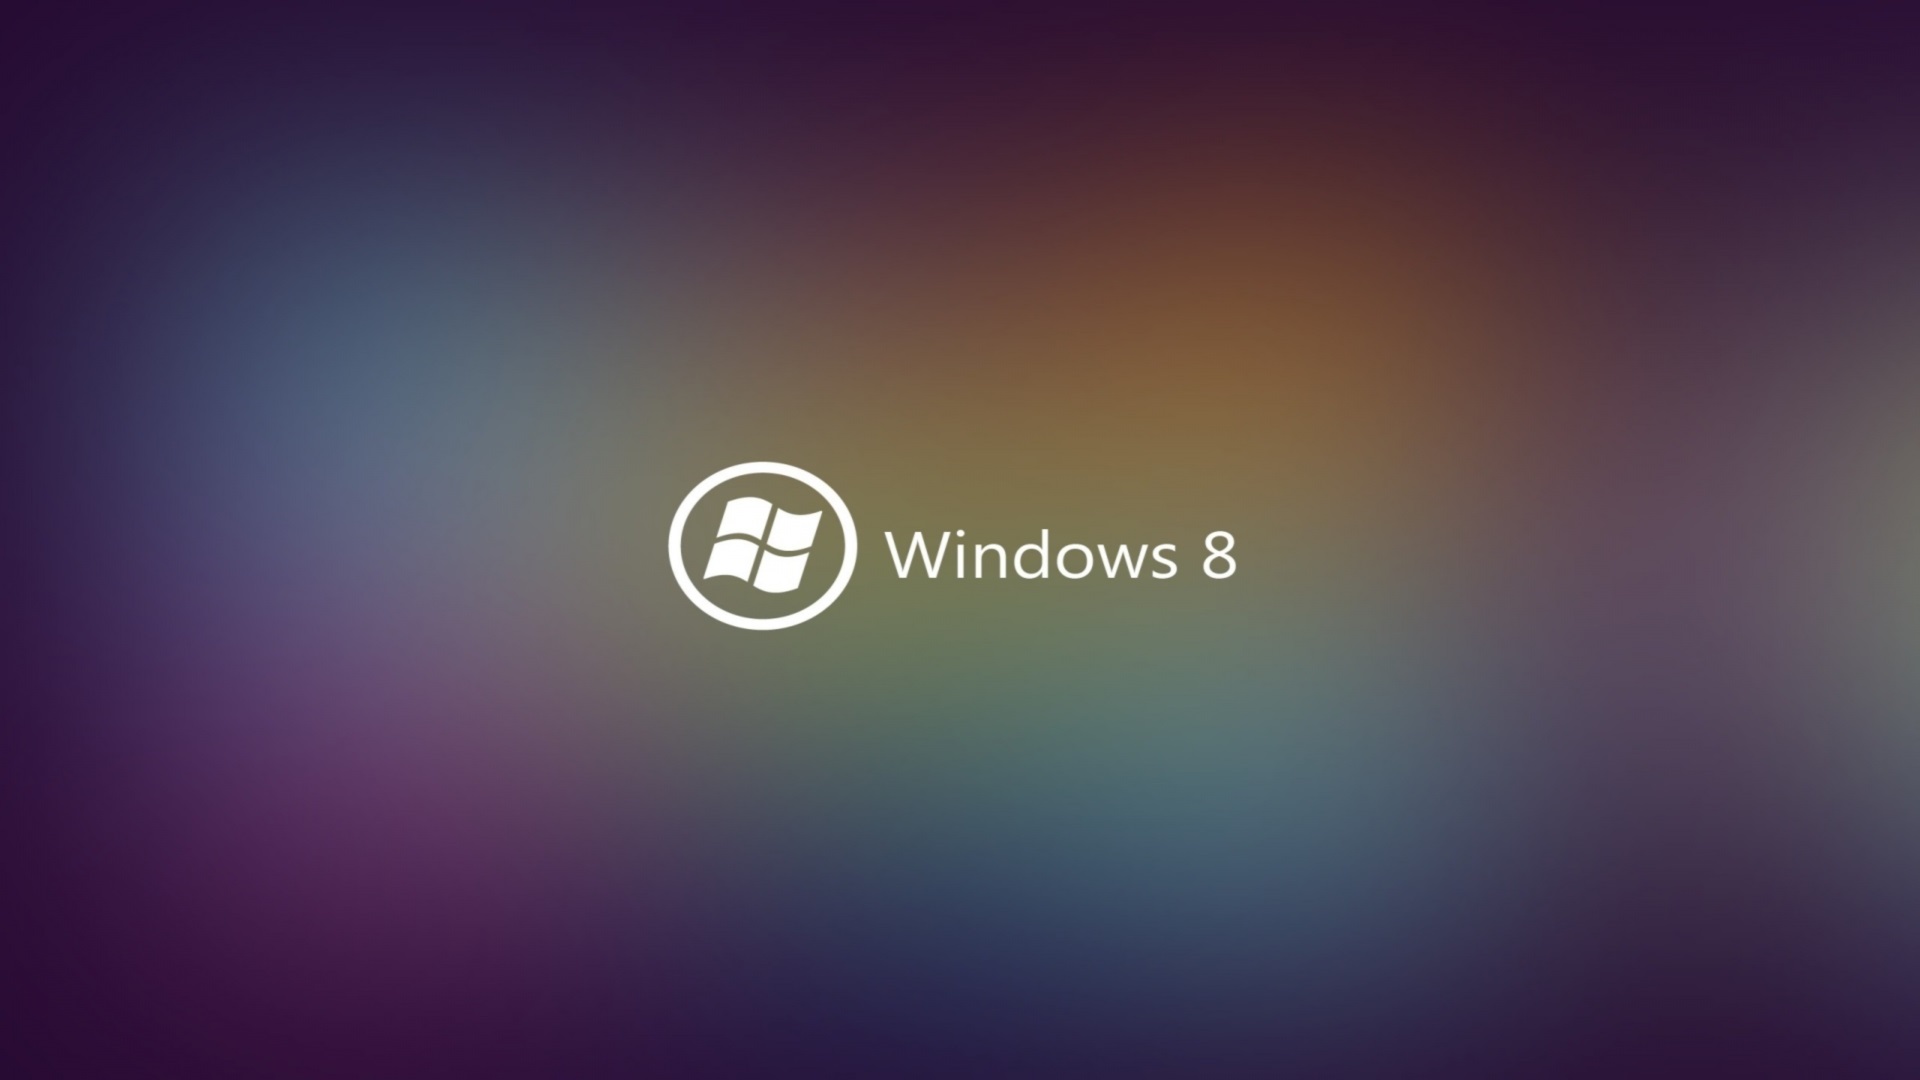 Windows 8 1920x1080